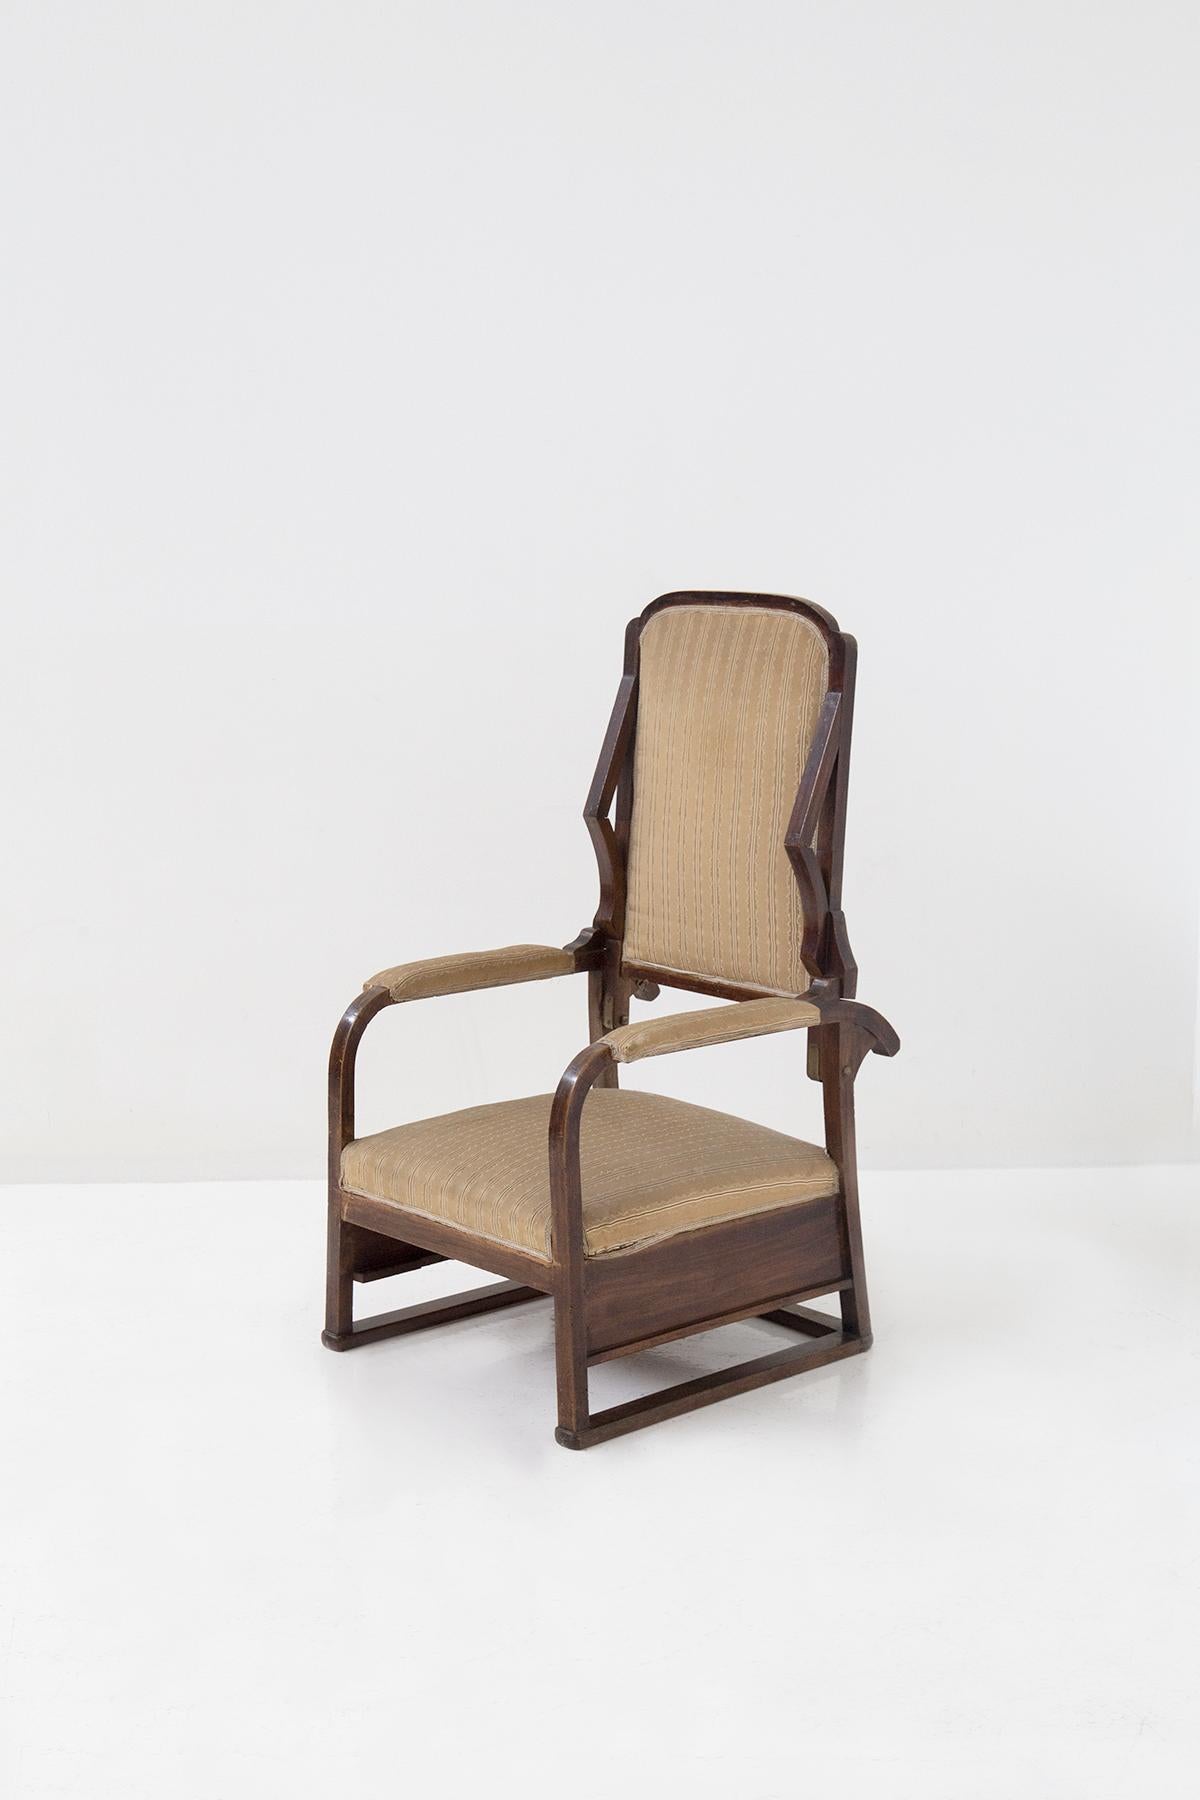 Treten Sie ein in eine Welt zeitloser Pracht mit diesem majestätischen Sessel, einer Verkörperung des italienischen Liberty-Stils, der Sie in eine vergangene Ära von Eleganz und Charme versetzt. Dieser mit viel Liebe zum Detail gefertigte Sessel ist